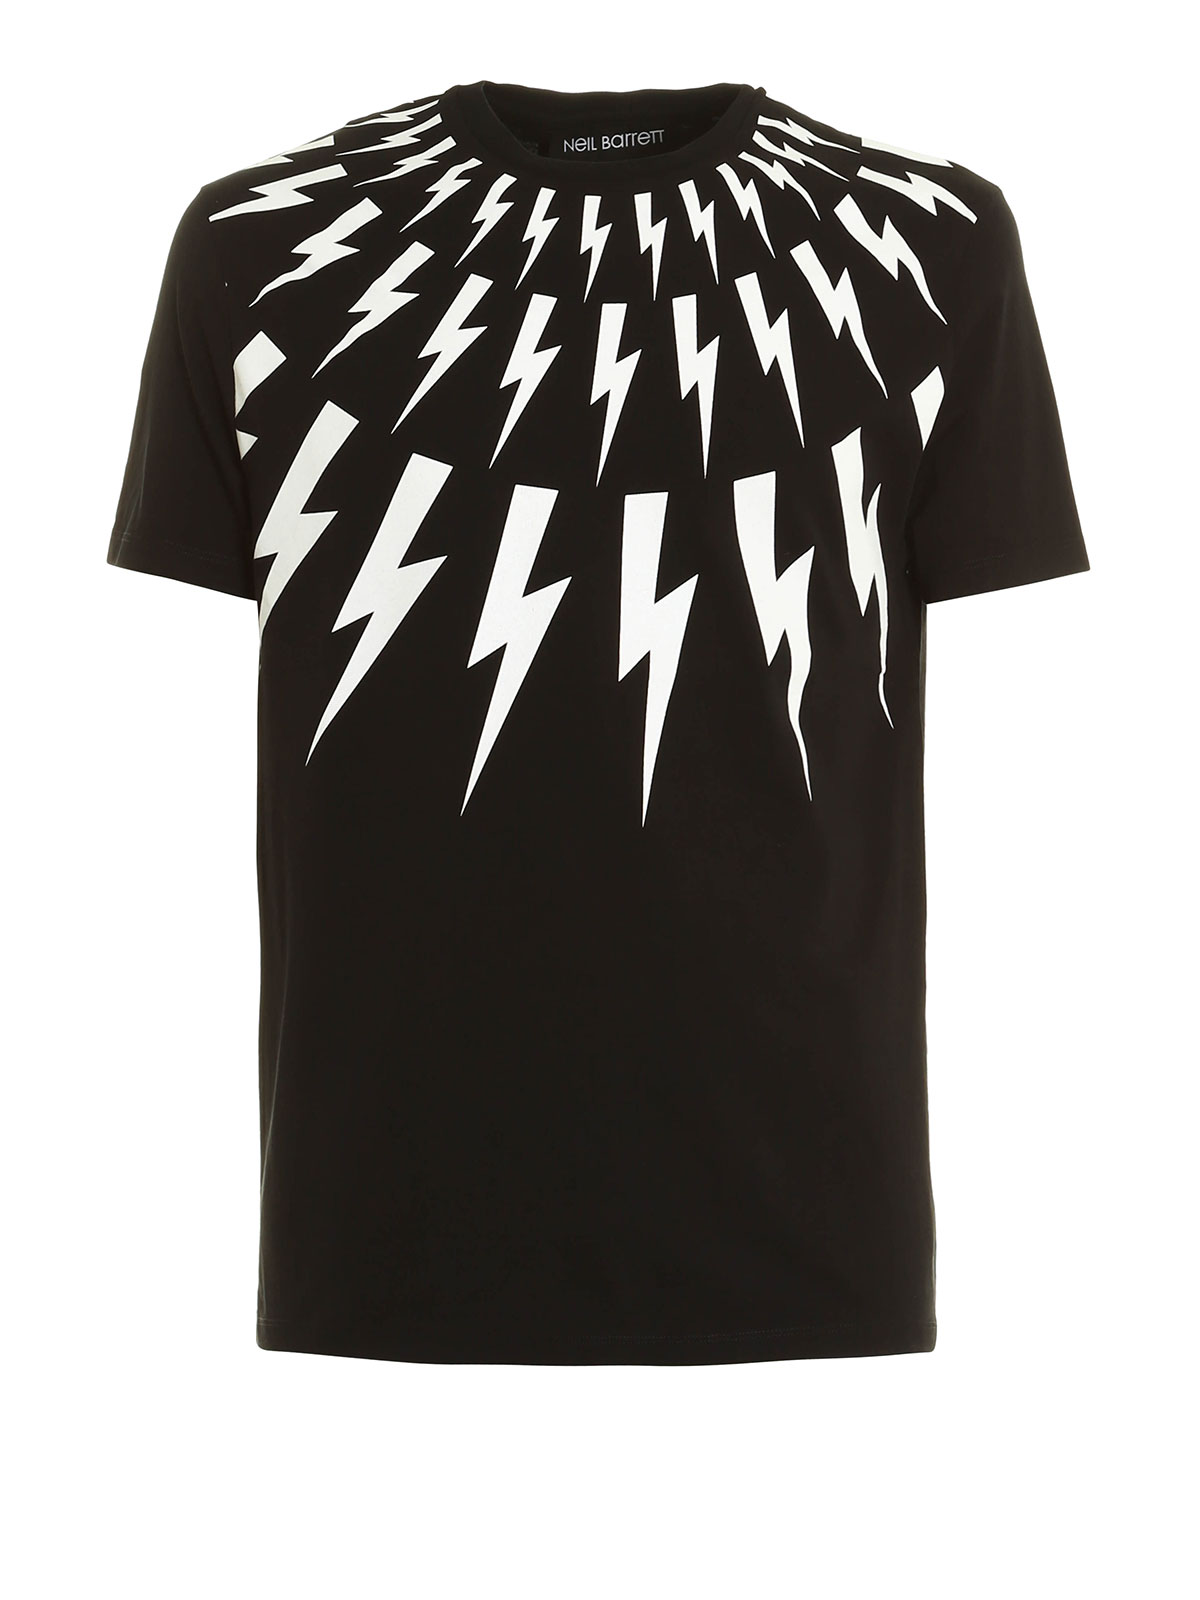 Tシャツ Neil Barrett - Tシャツ メンズ - 黒 - PBJT108E510S524